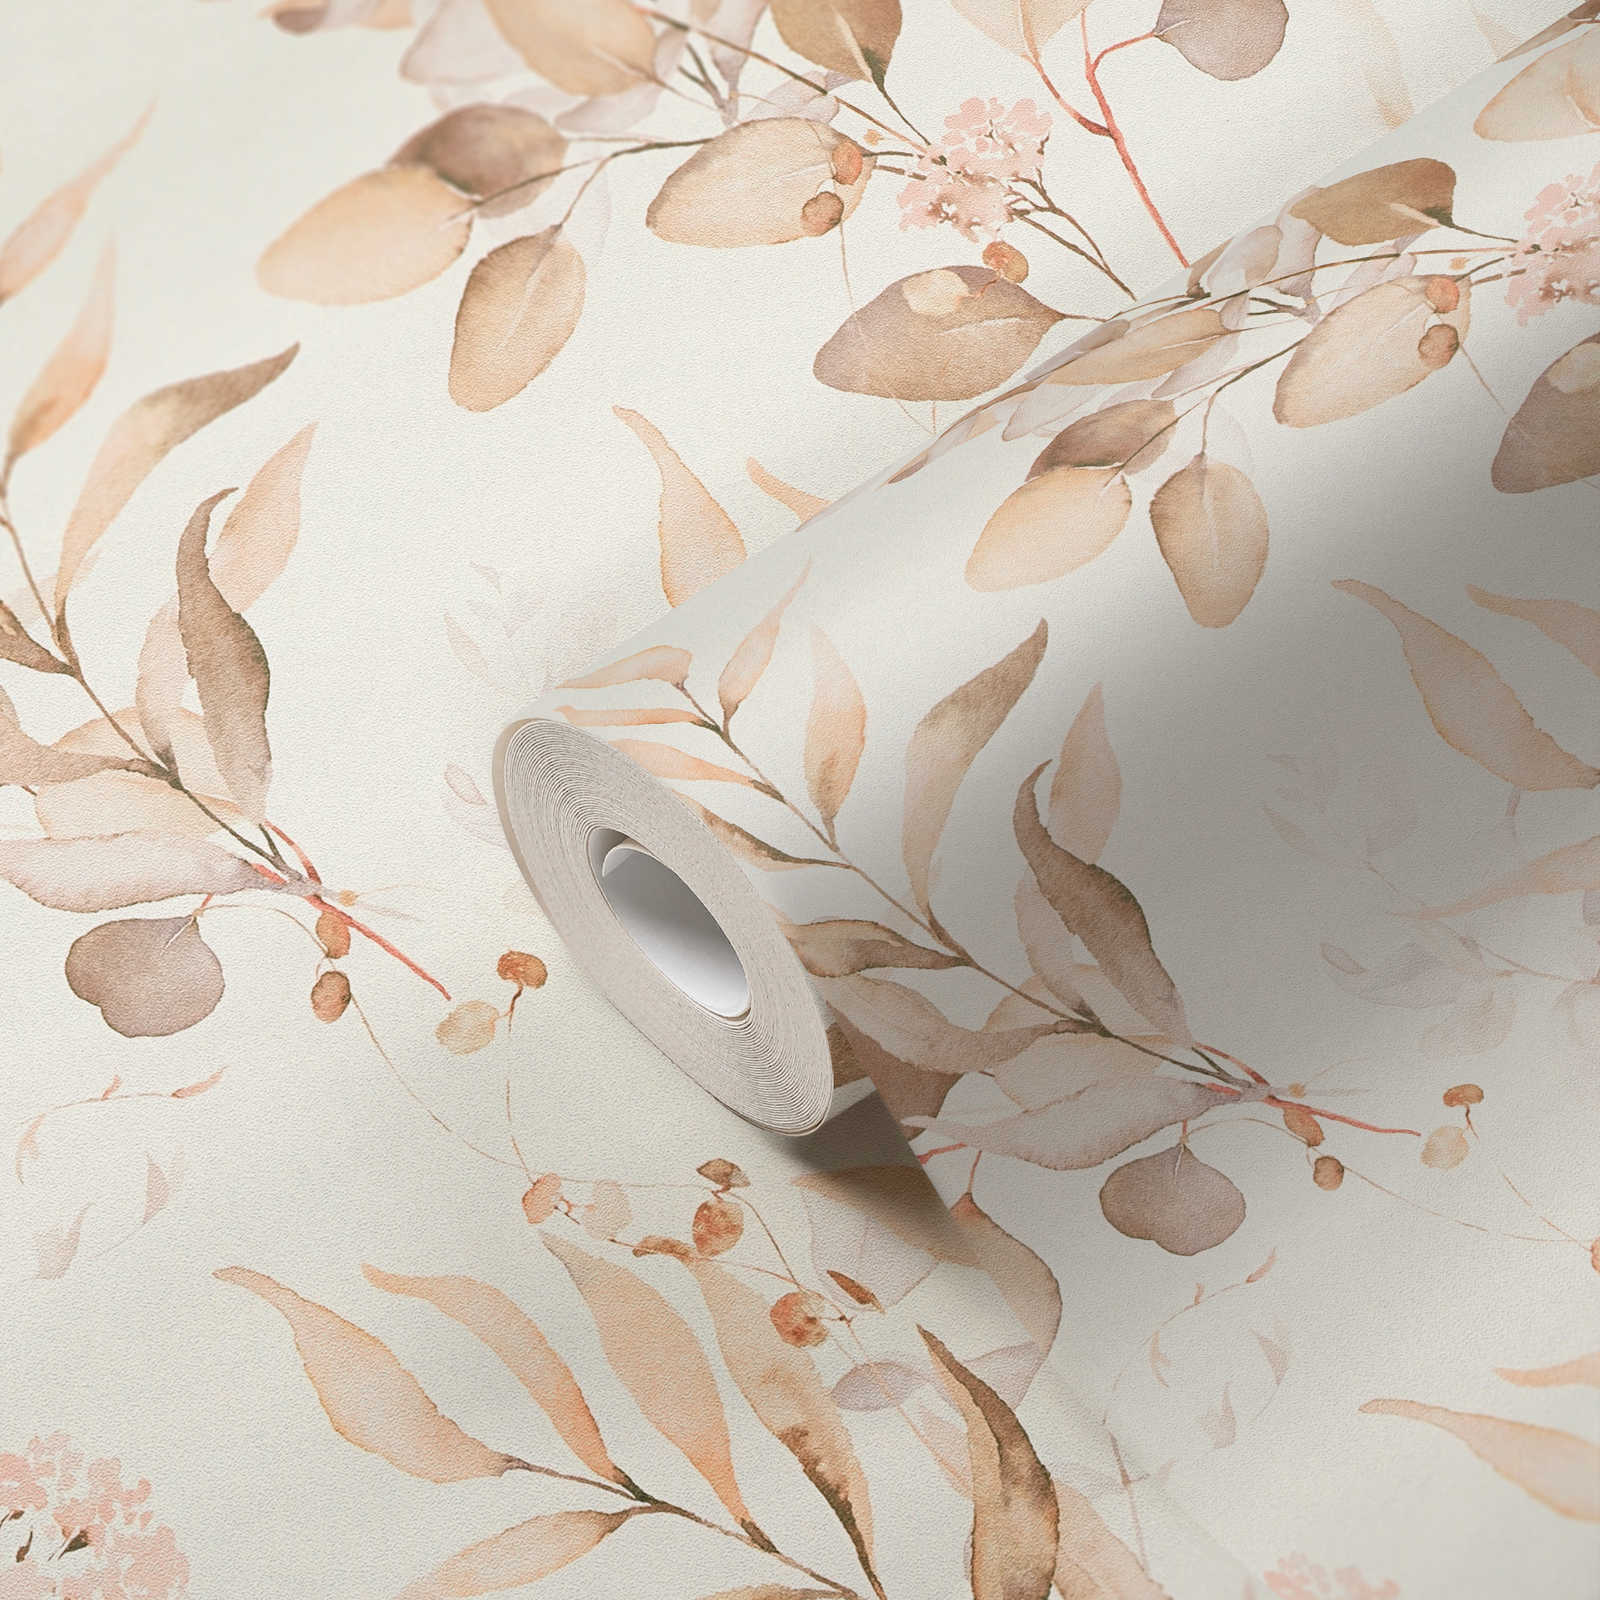             Papel pintado no tejido con motivo de hojas de acuarela en tonos cálidos - crema, beige
        